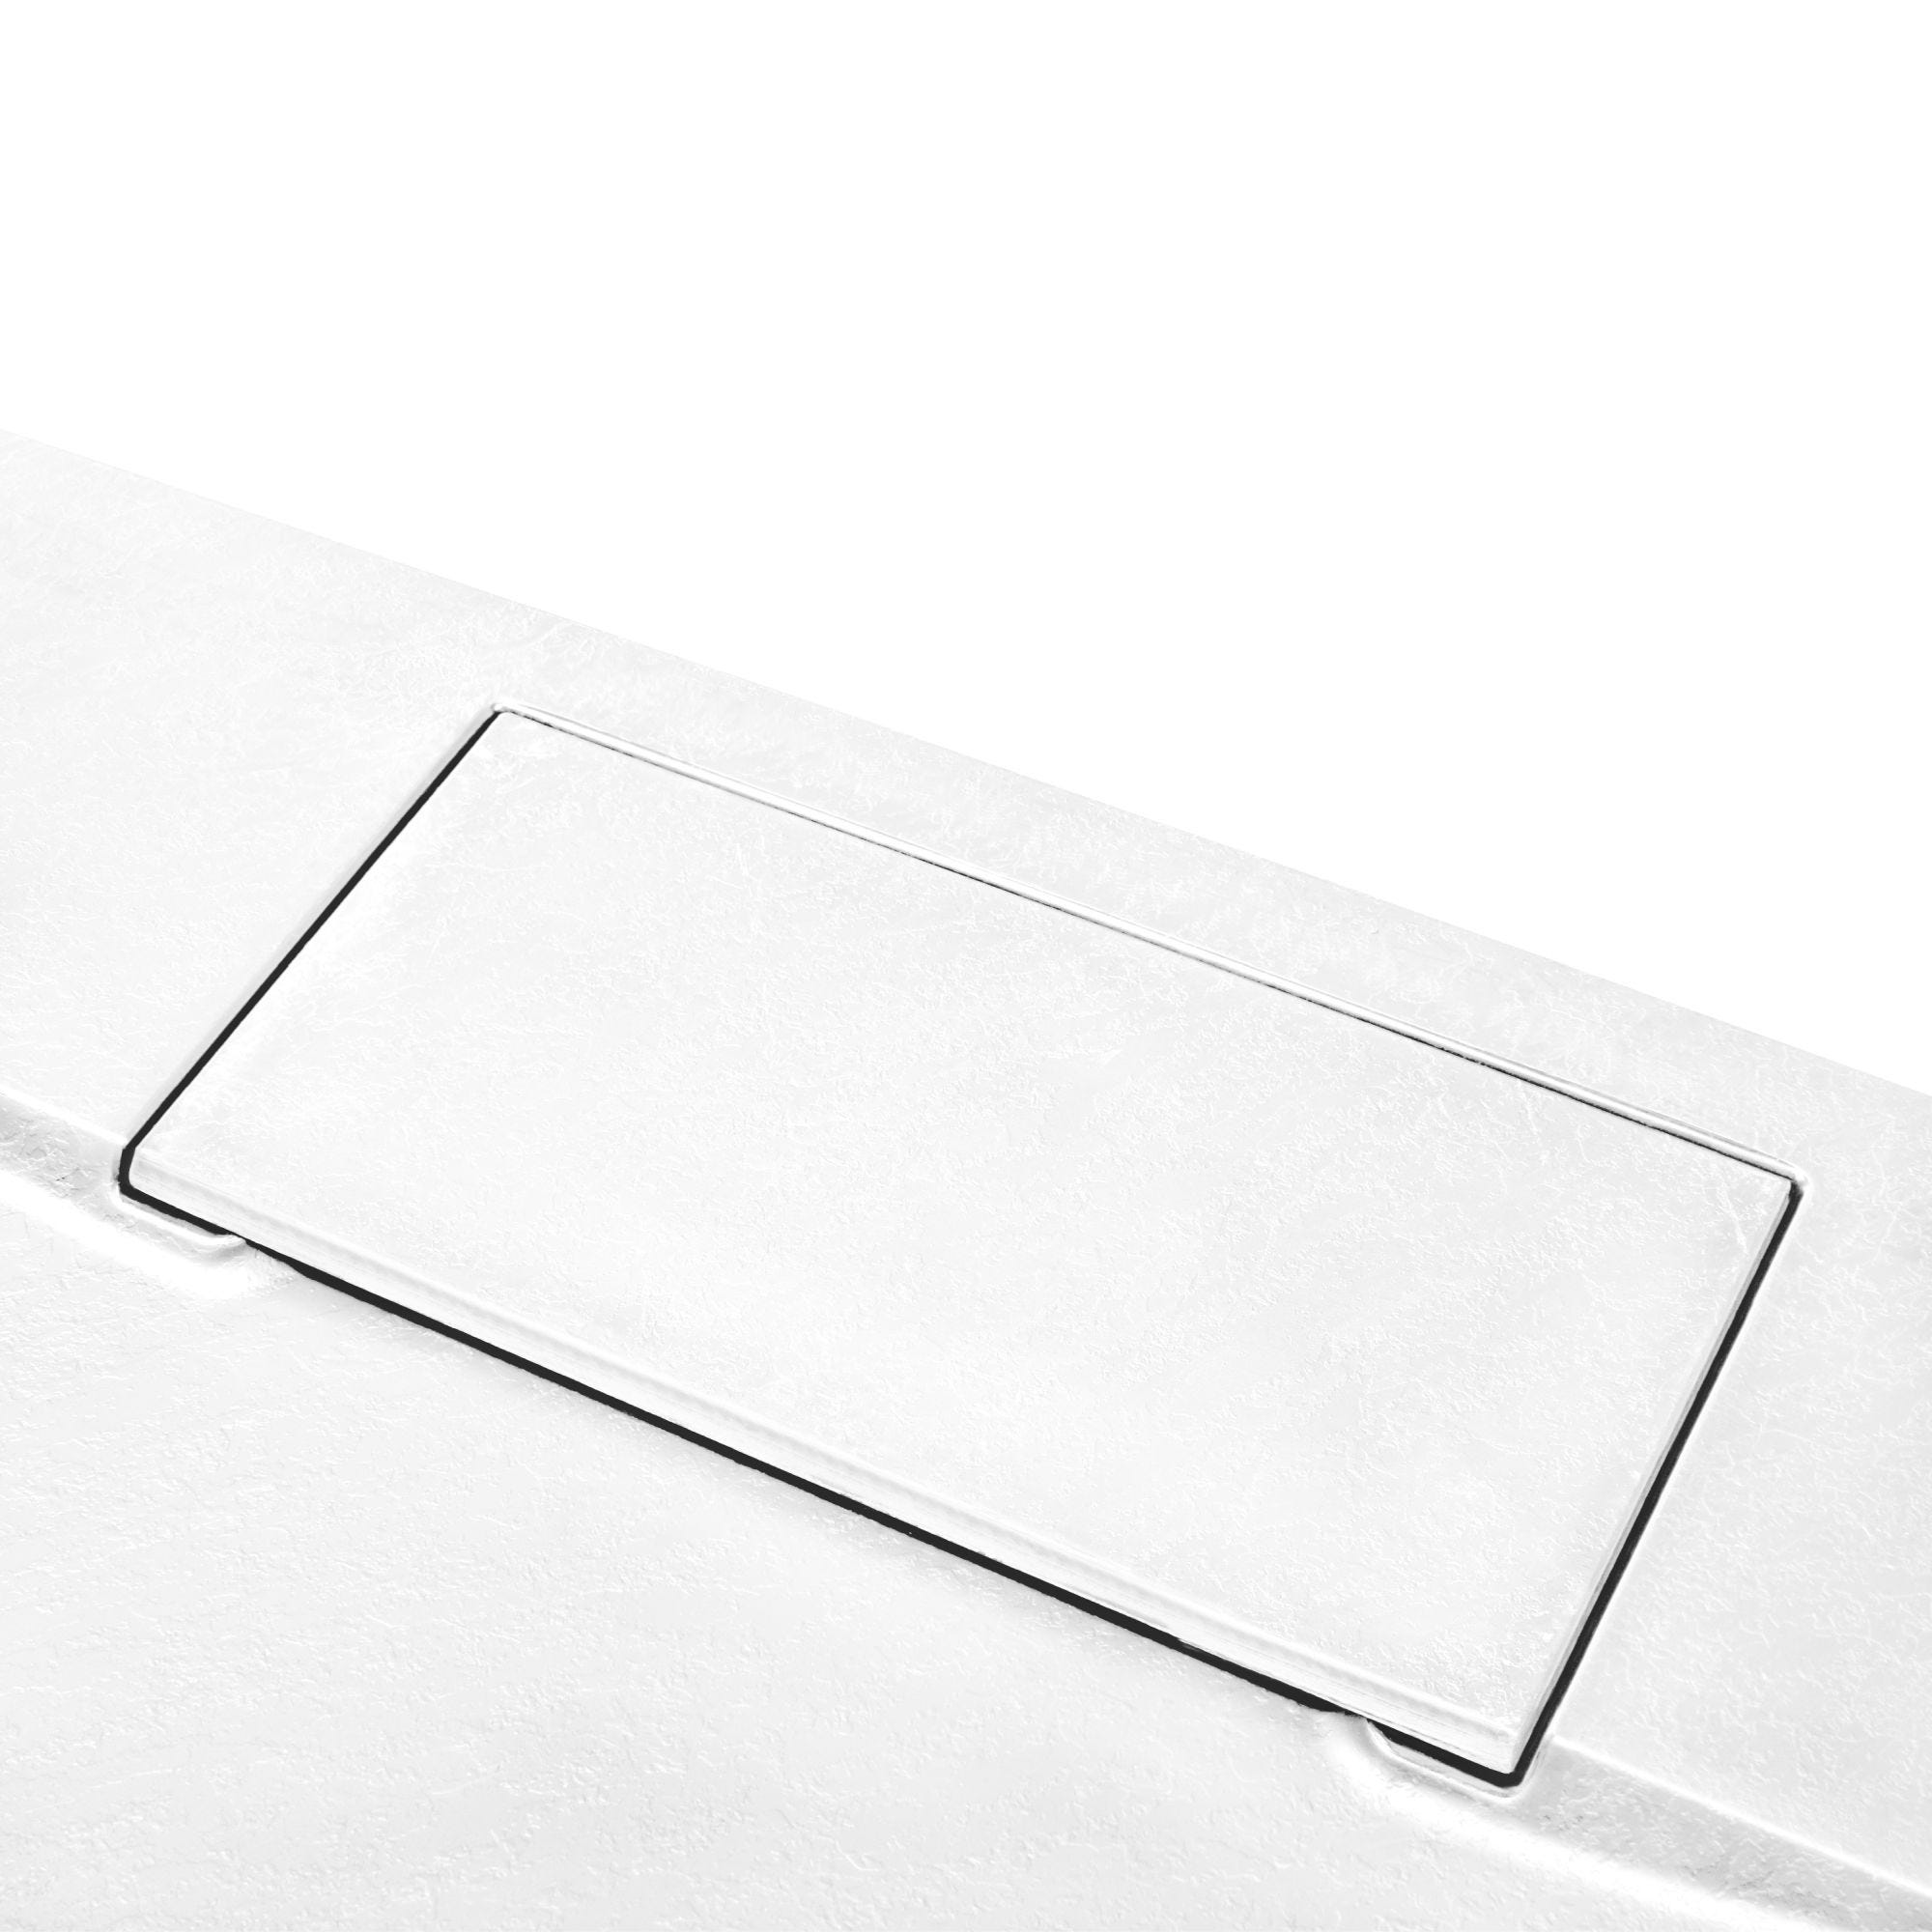 Schulte receveur de douche 90 x 160 x 3,2cm, blanc effet pierre ultra légers, rectangulaire, extra plat à poser ou à encastrer, bac à douche 3